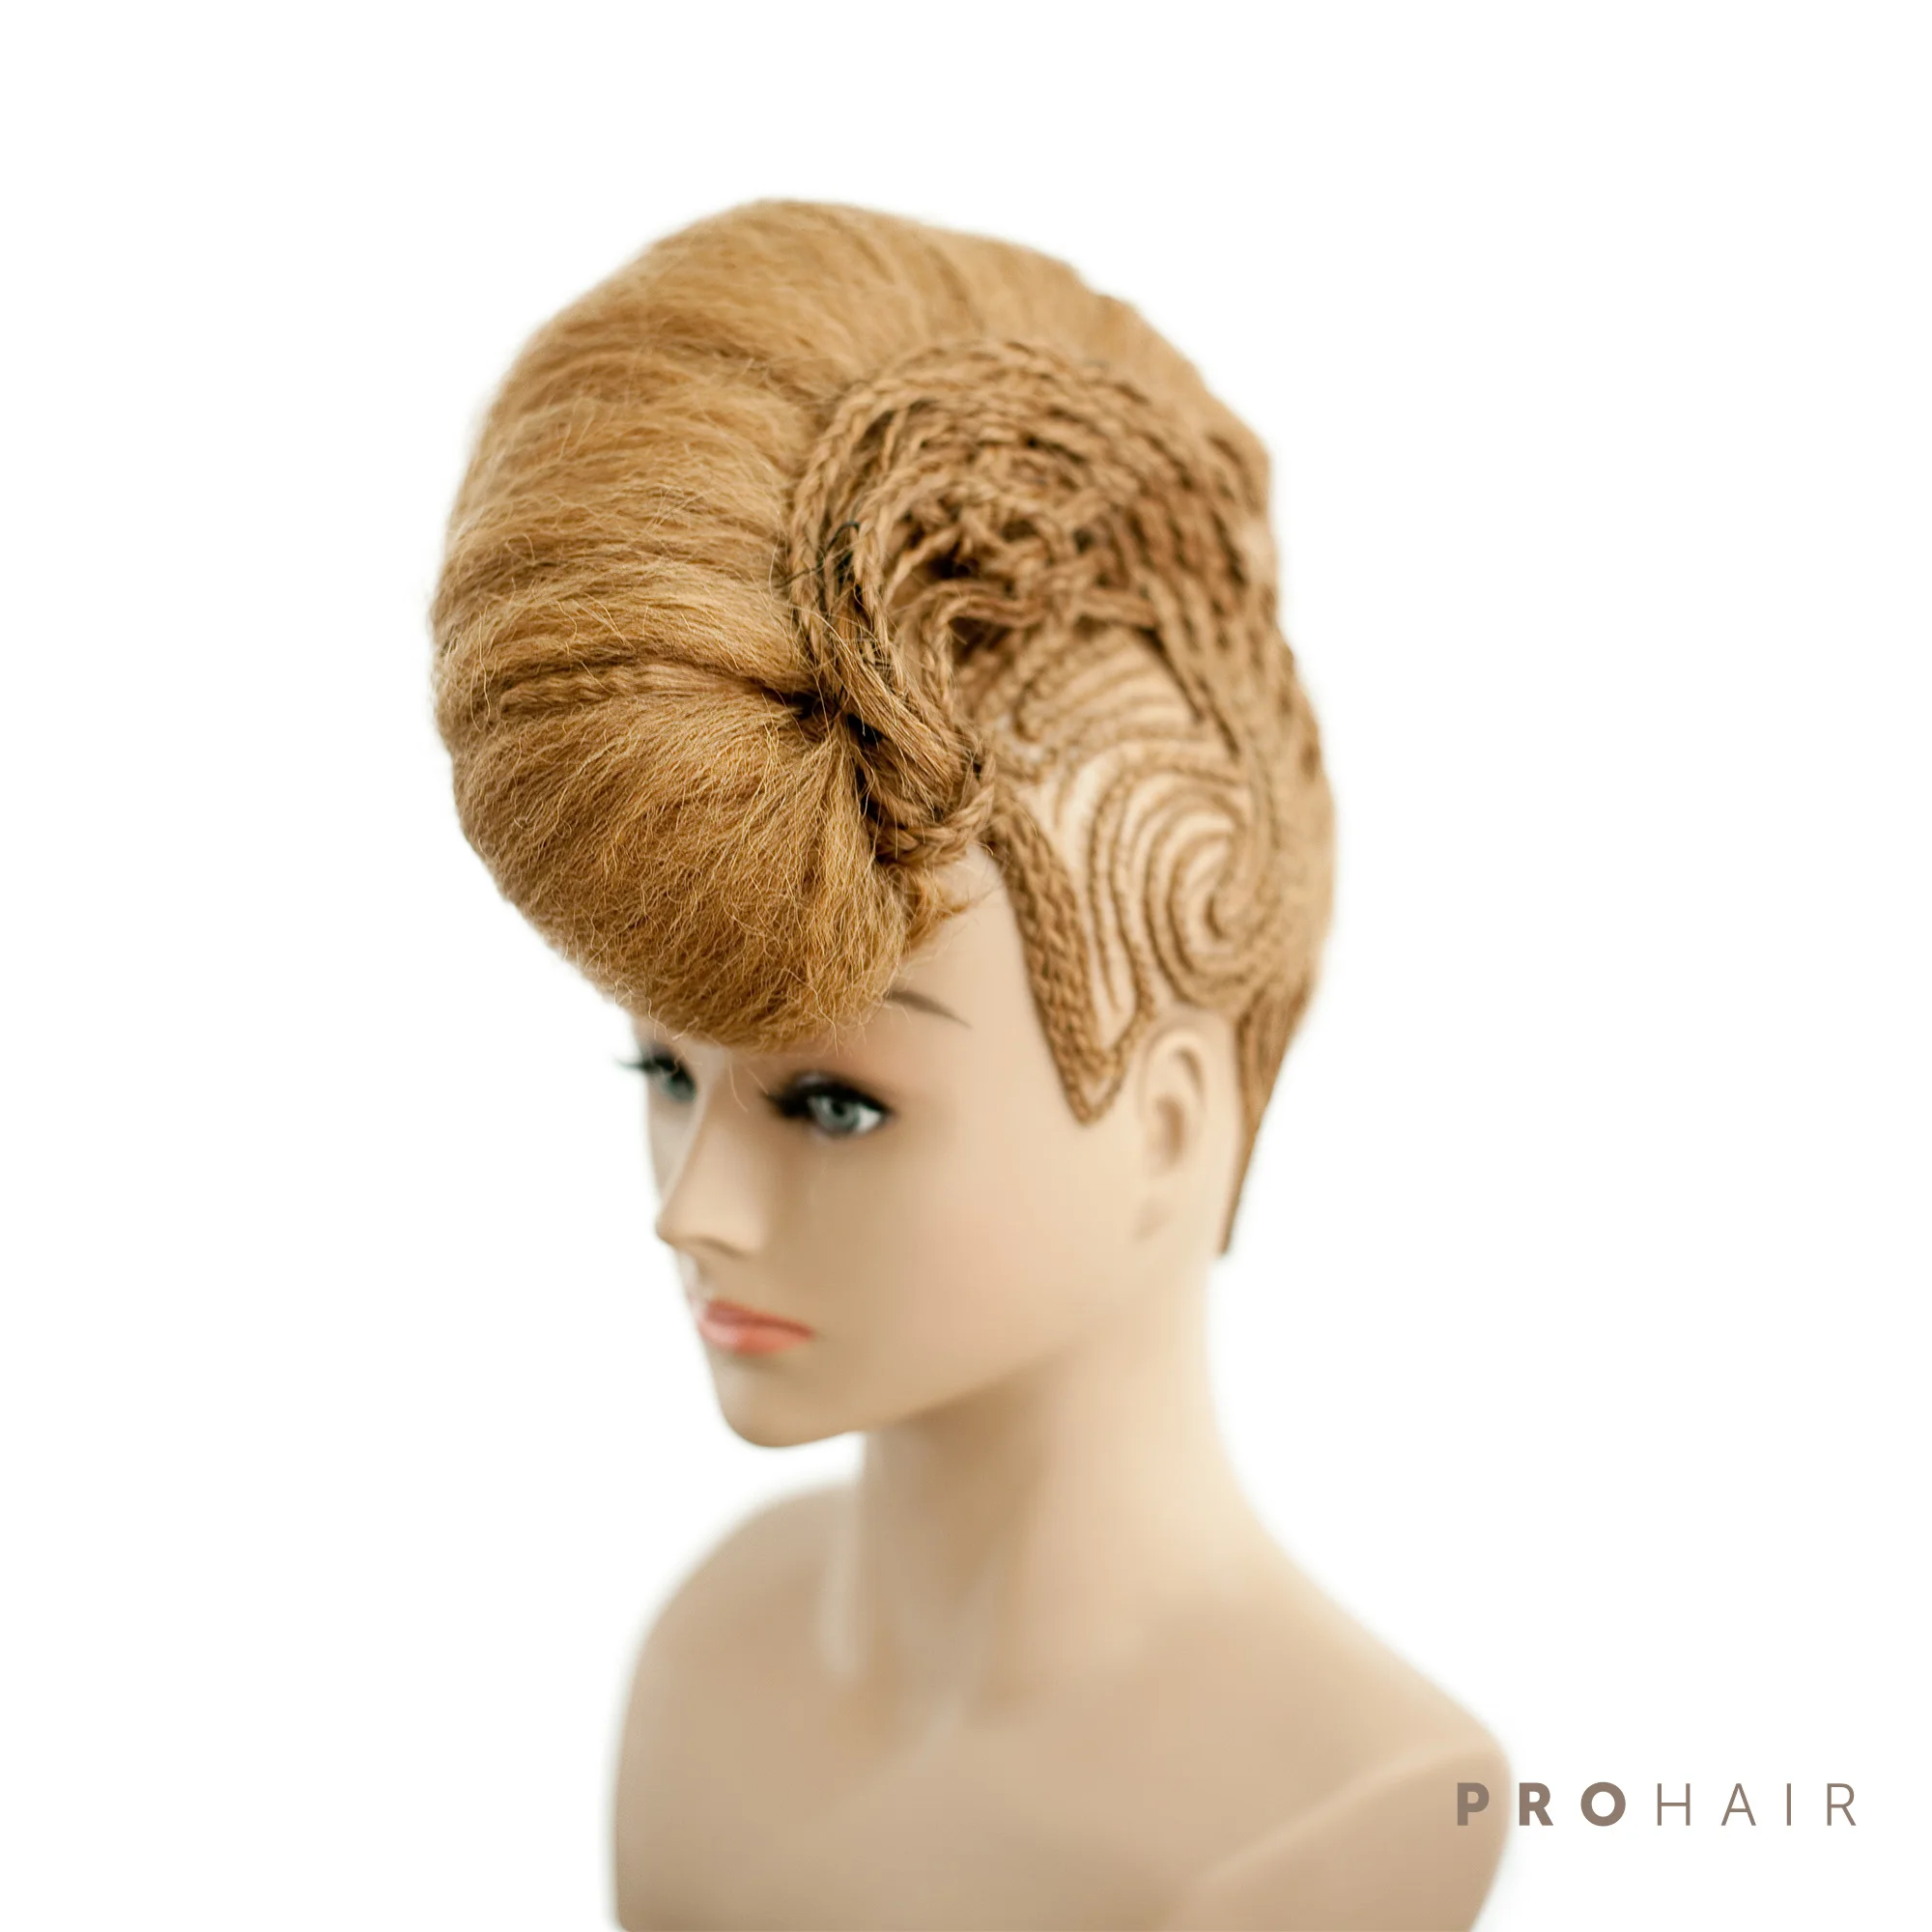 PROHAIR OMC одобренный 50 см 2" человеческие волосы темный блонд соревнование манекен головы Парикмахерская манекен голова куклы